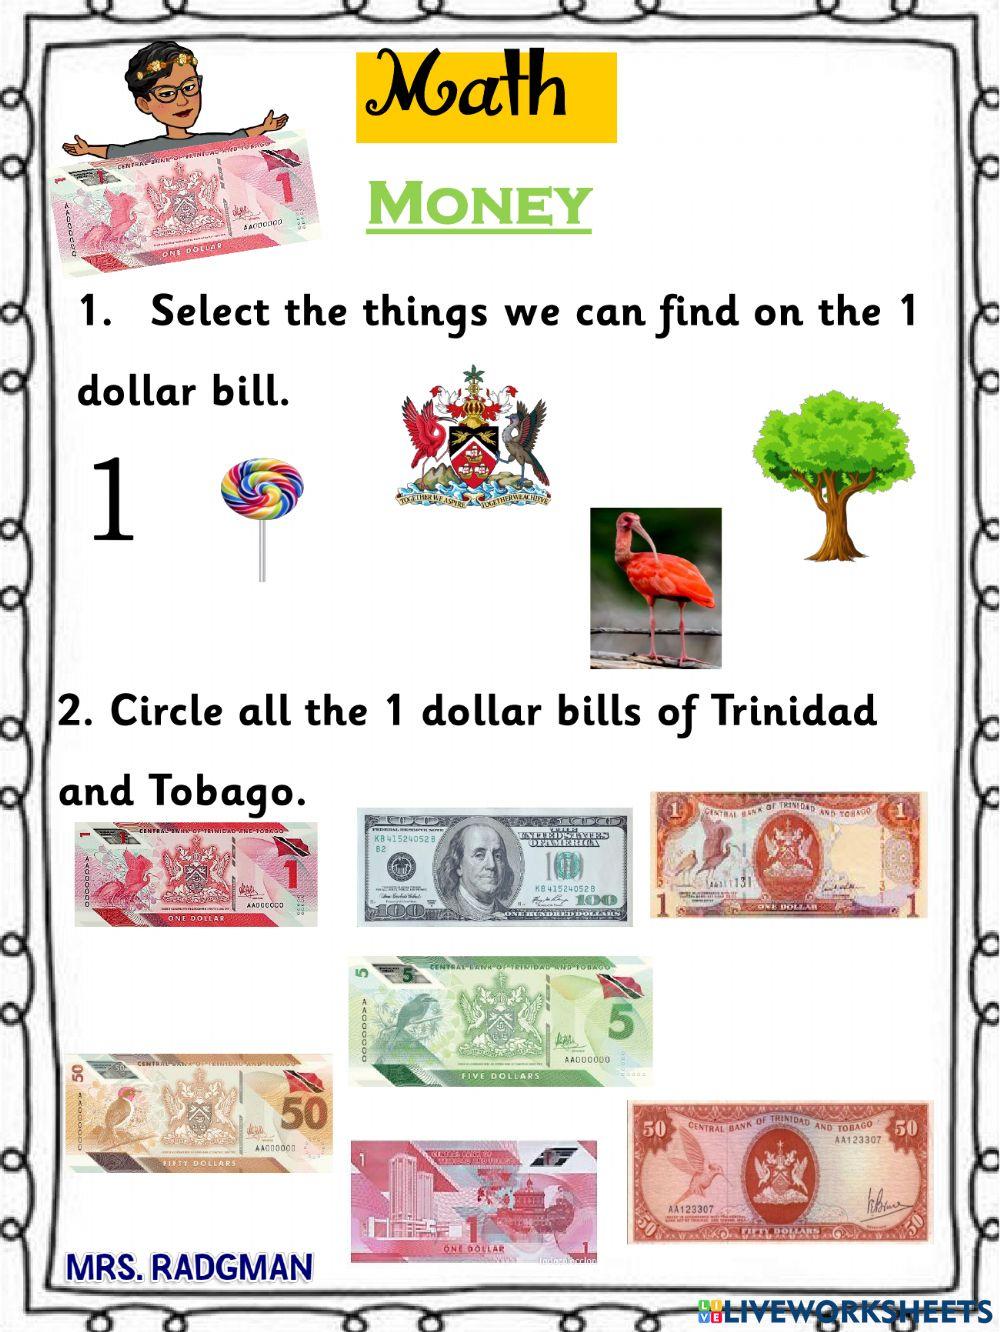 One dollar Bill